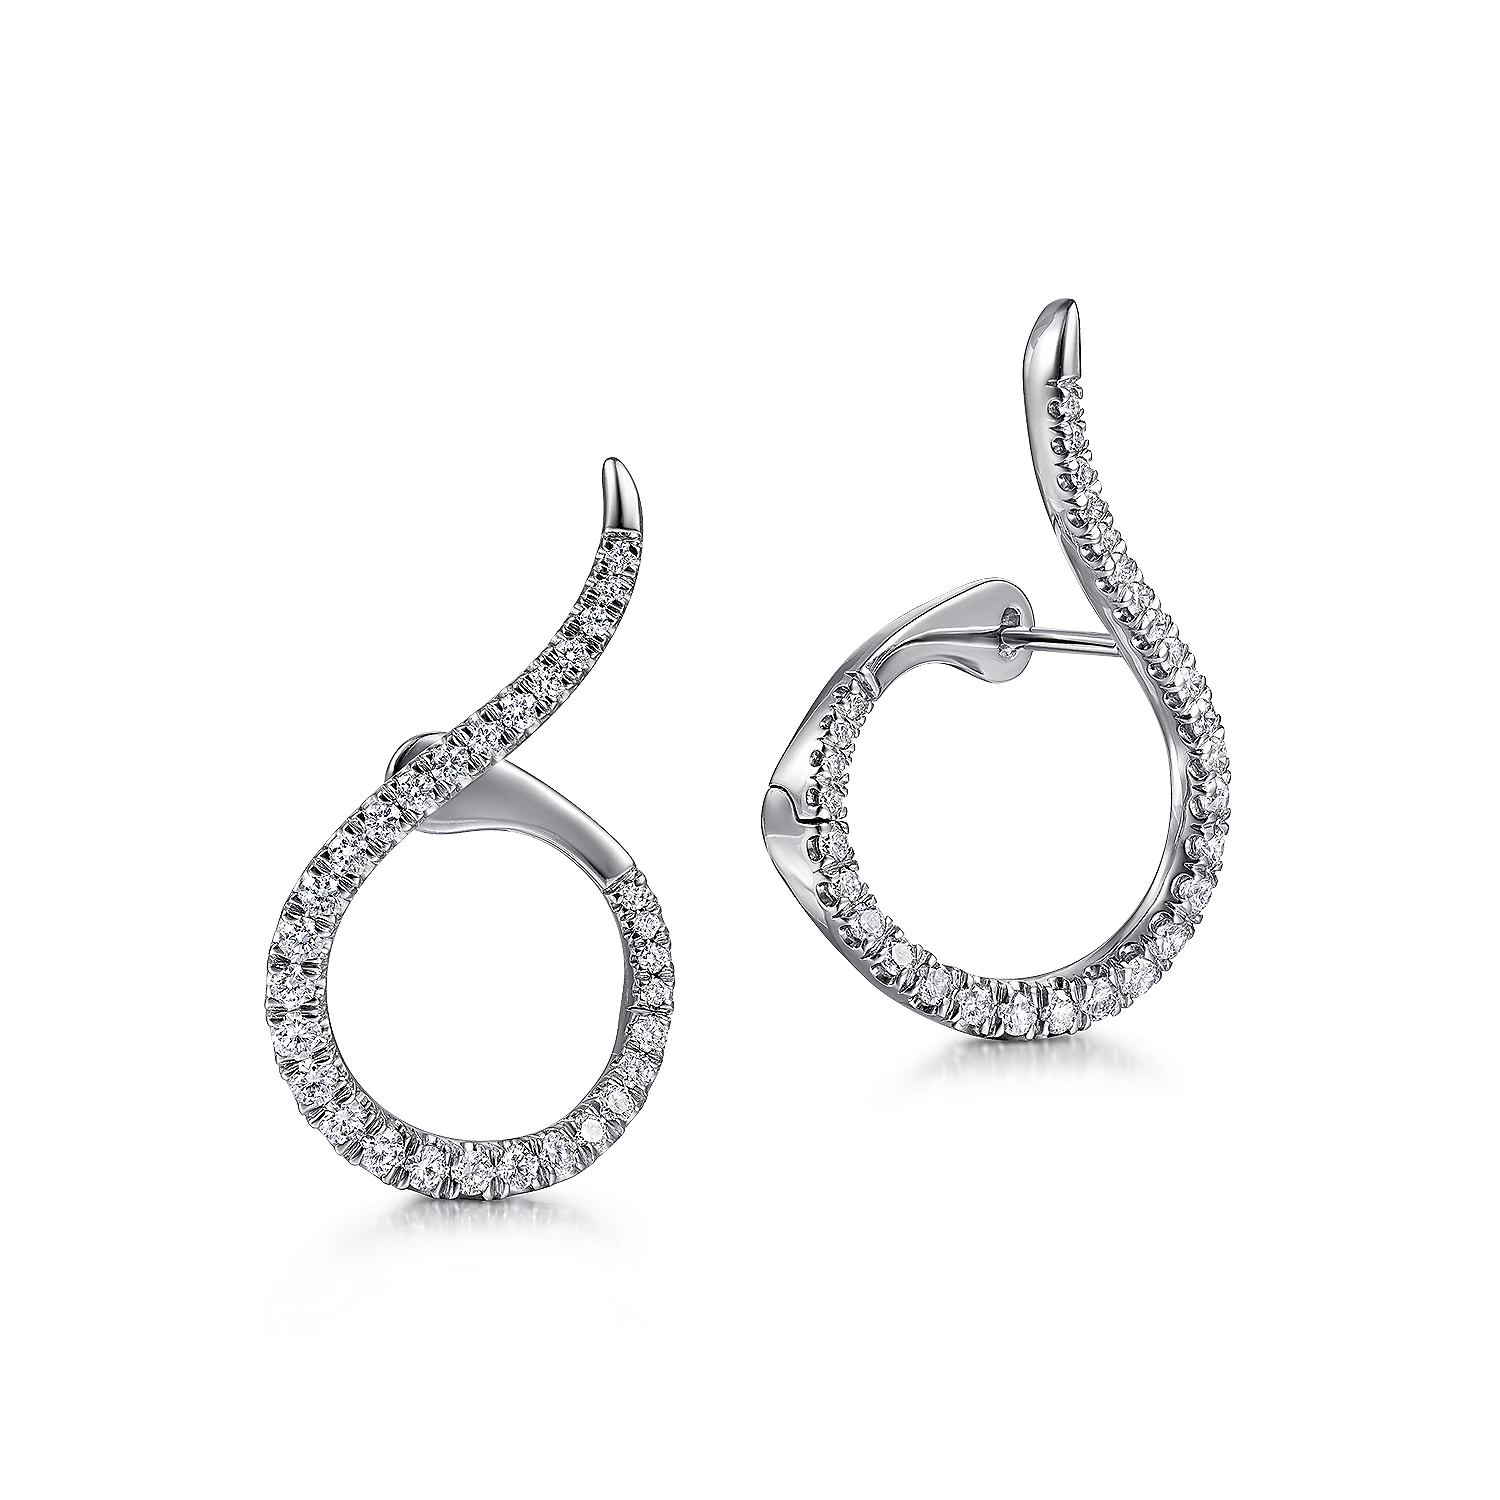 TOUS White Gold TOUS Les Classiques Earrings with Diamonds. 0,31ct. | Plaza  Las Americas